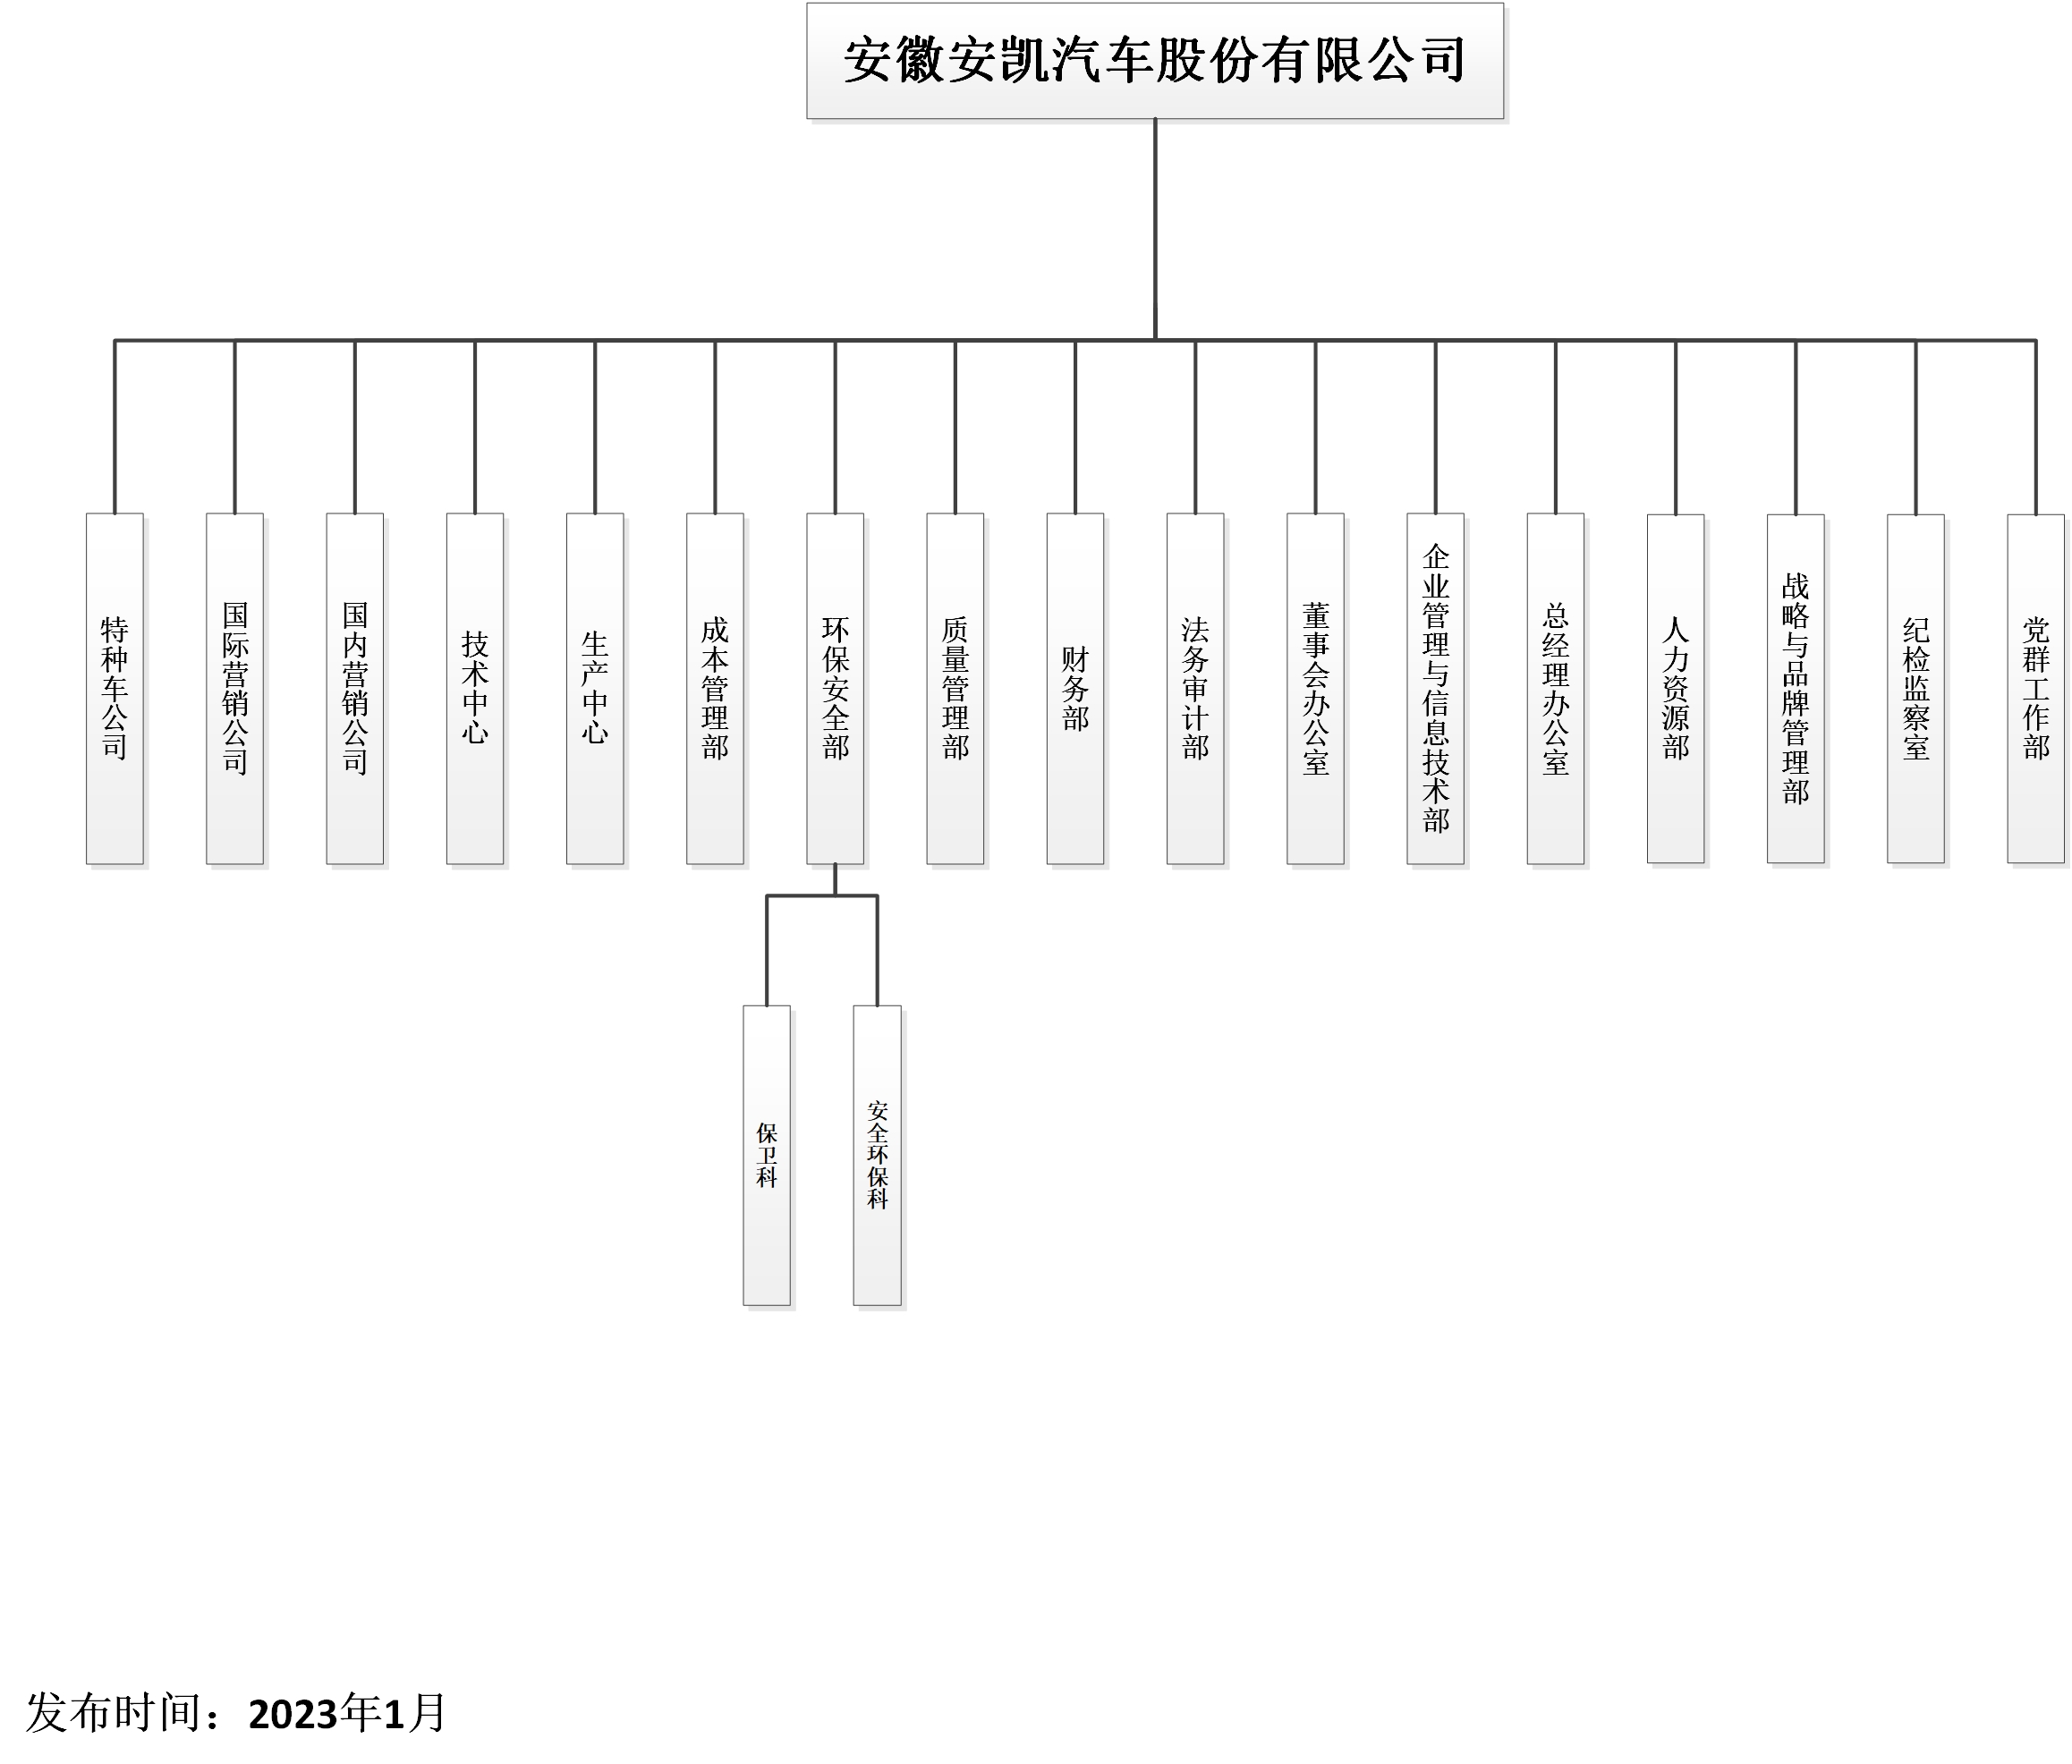 公司组织架构图-20230103（信息公开）.jpg